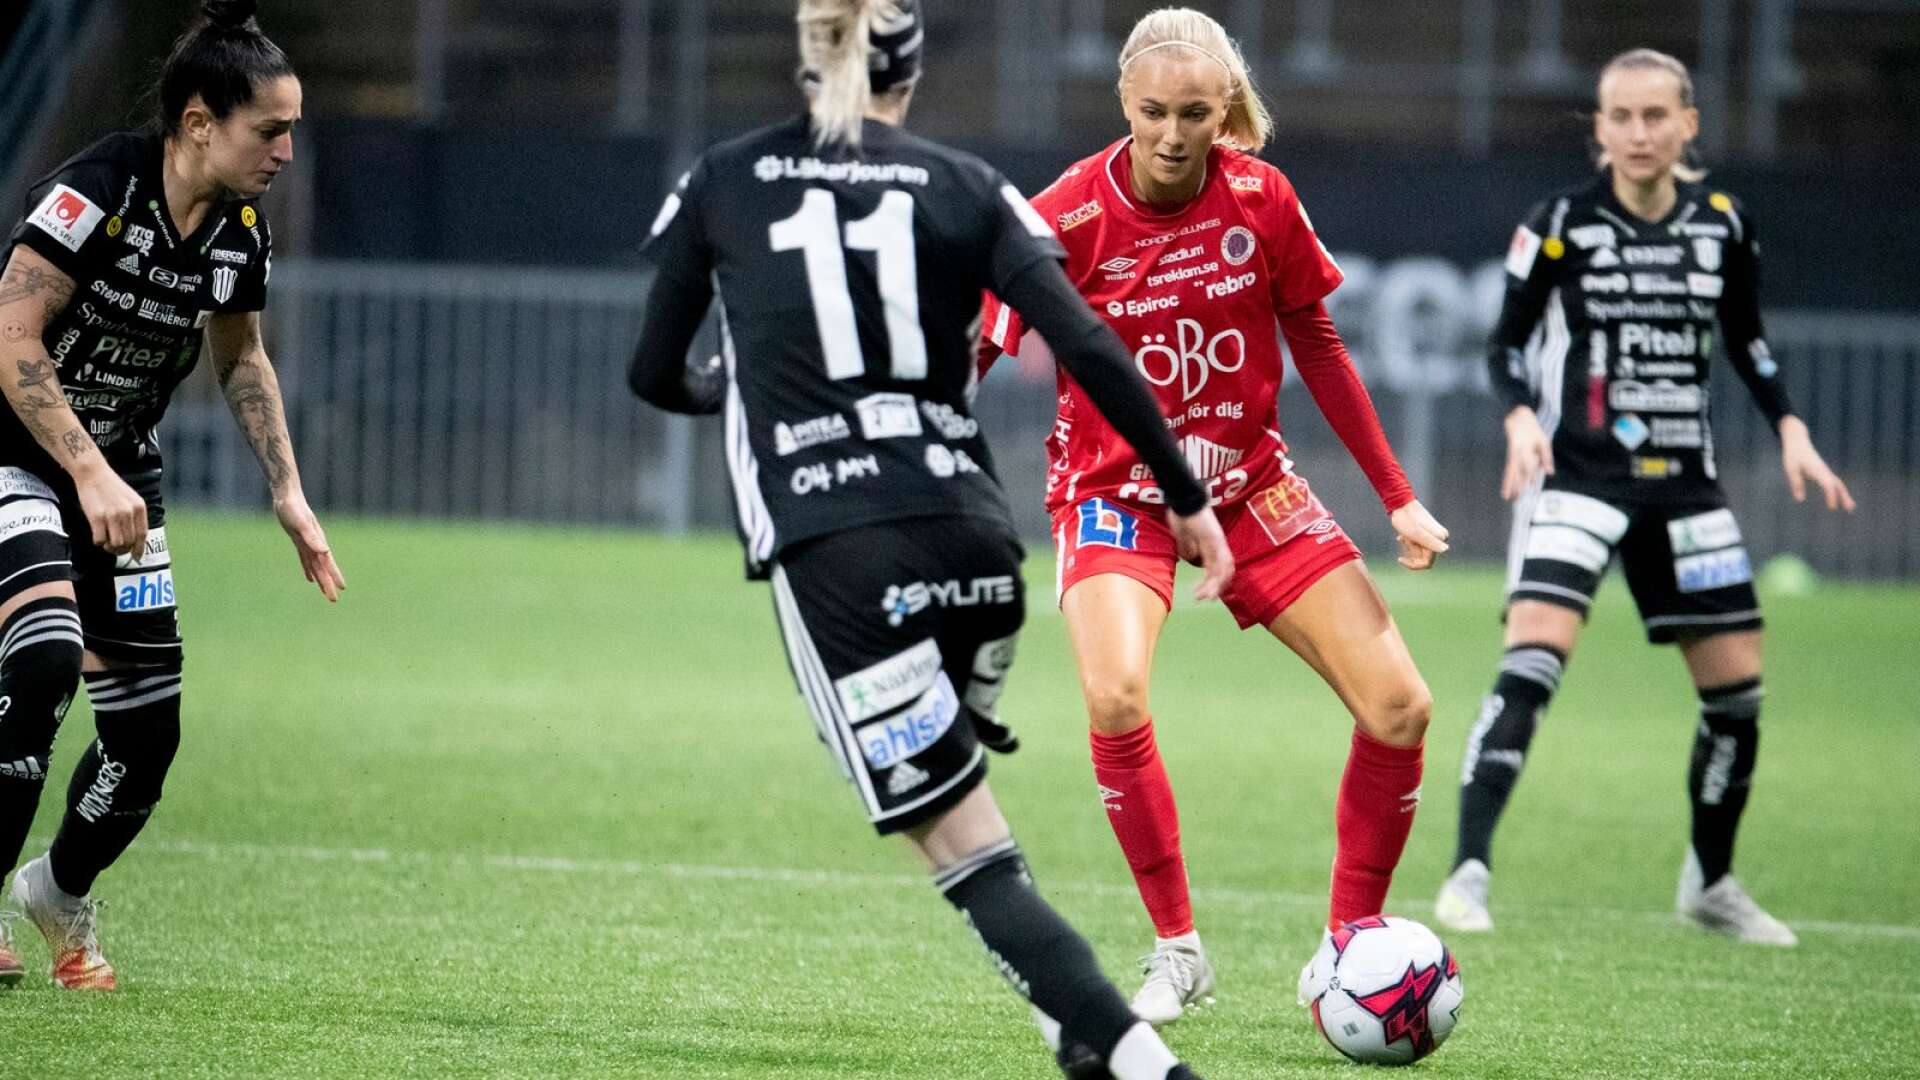 Värmländskan Sara Lilja Vidlund, 20, byter Kif Örebro mot Djurgården i allsvenskan.